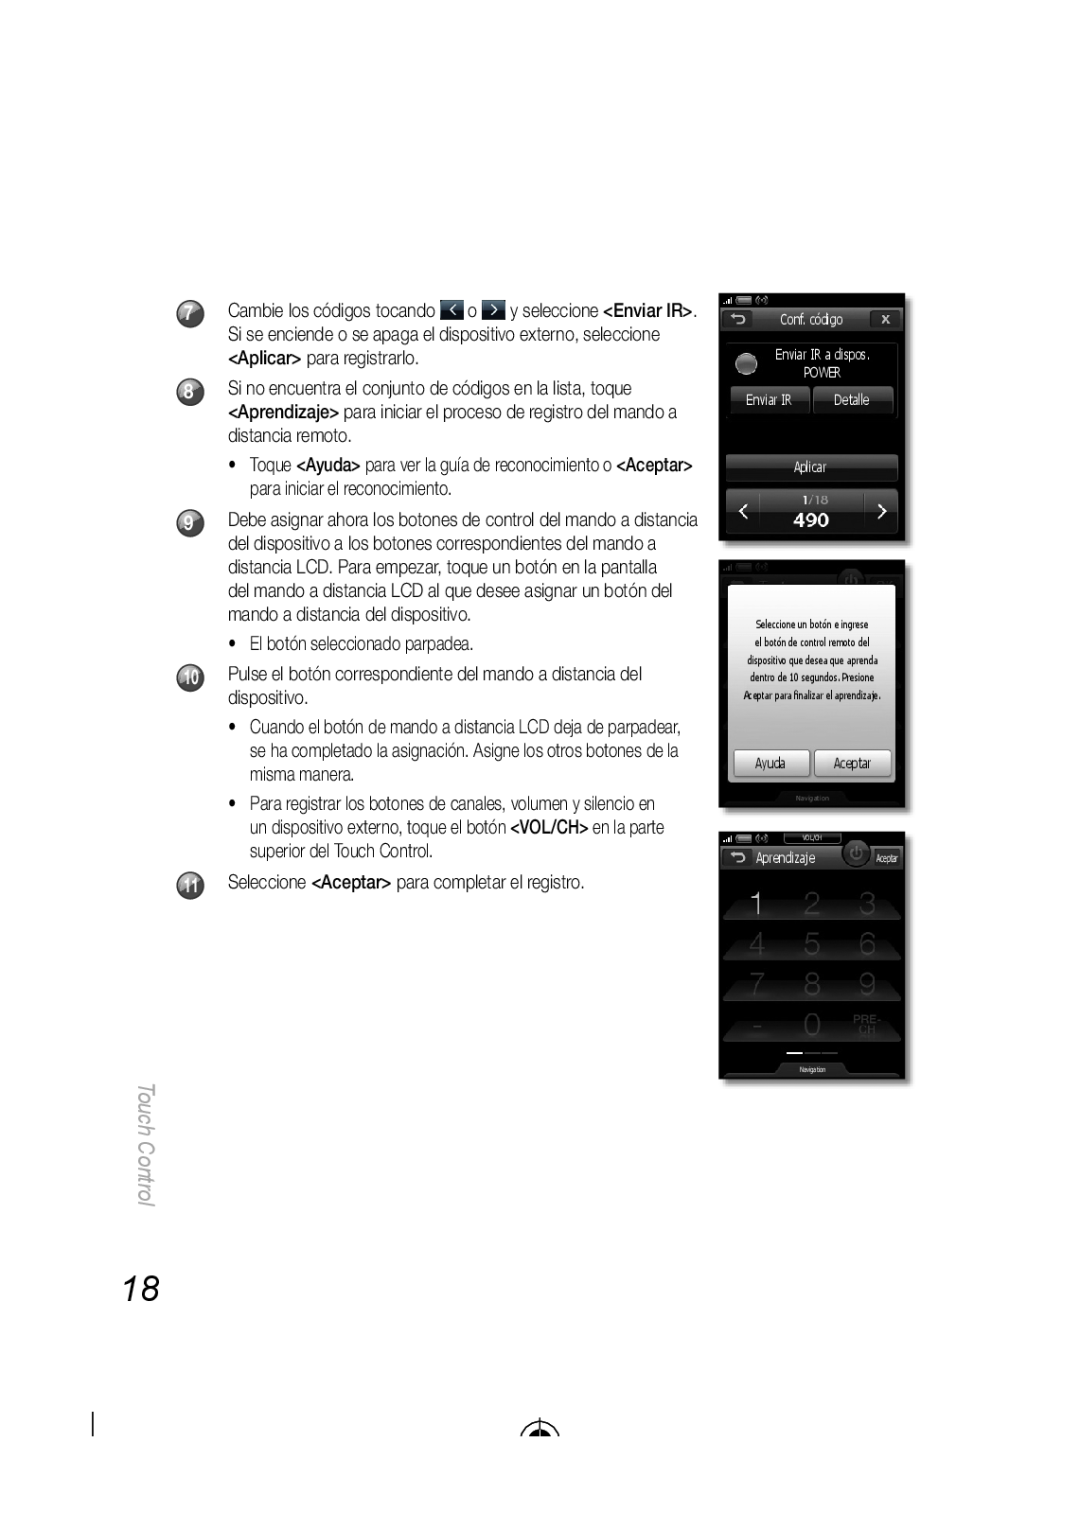 Samsung BN68-03092A-02 El botón seleccionado parpadea, Seleccione Aceptar para completar el registro, Touch Control 